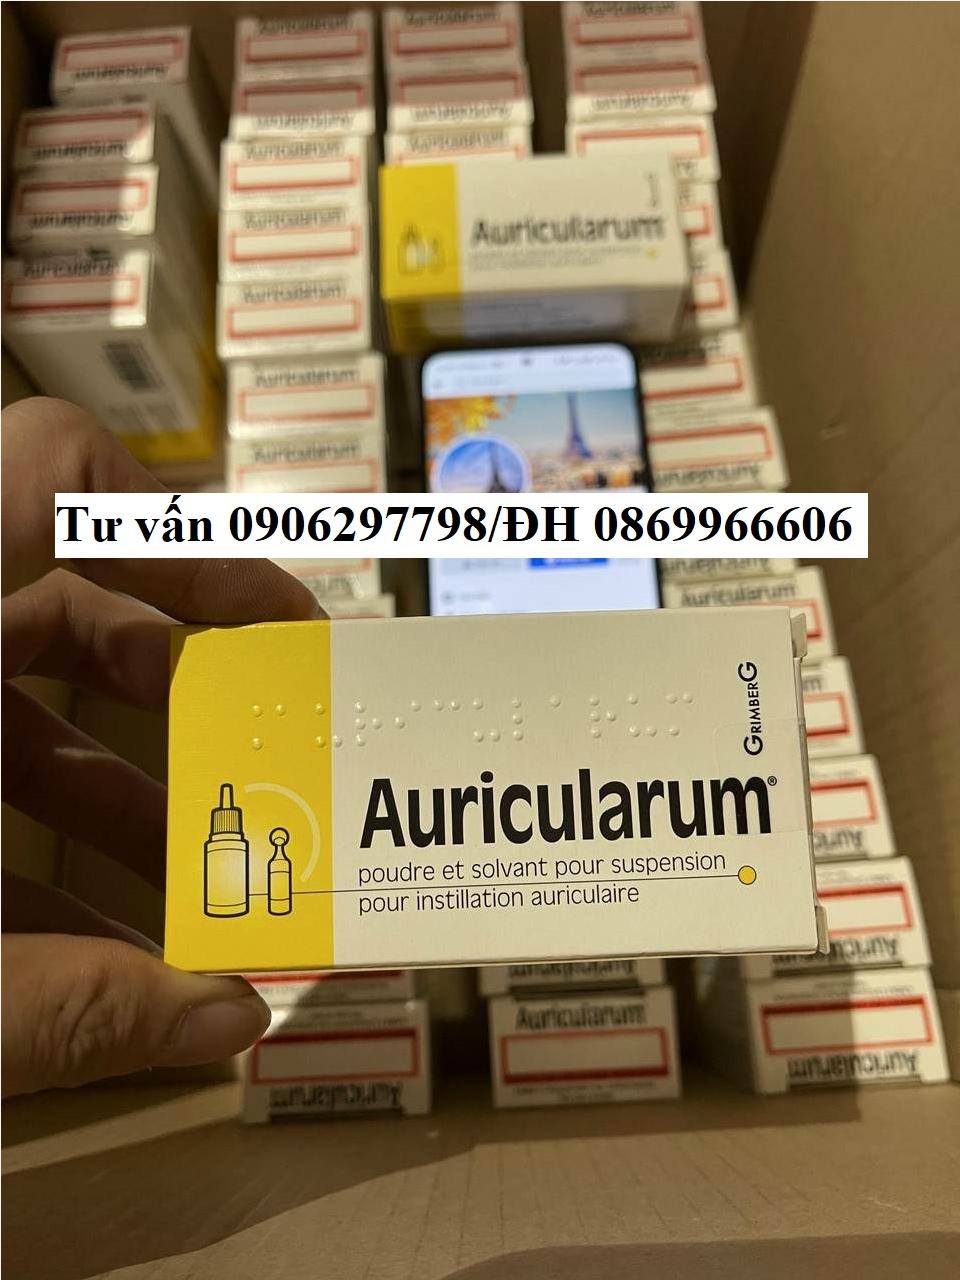 Thuốc Auricularum giá bao nhiêu mua ở đâu?